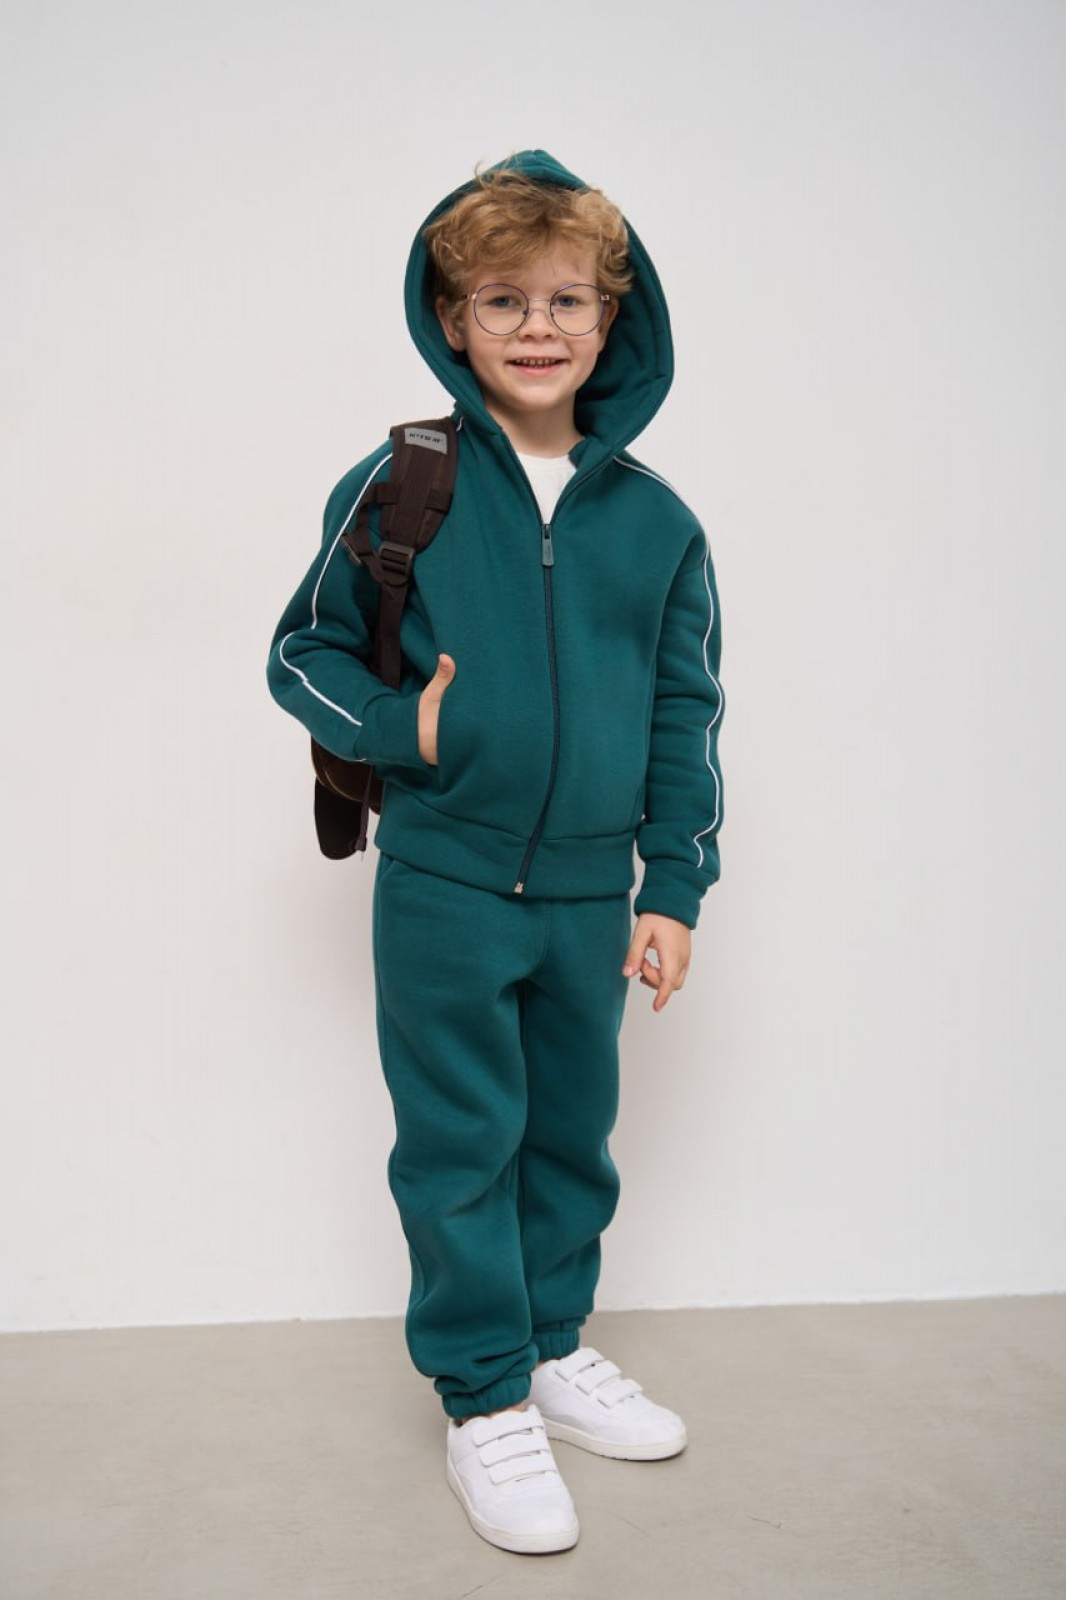 Теплий костюм для хлопчика колір зелений р.110 447459